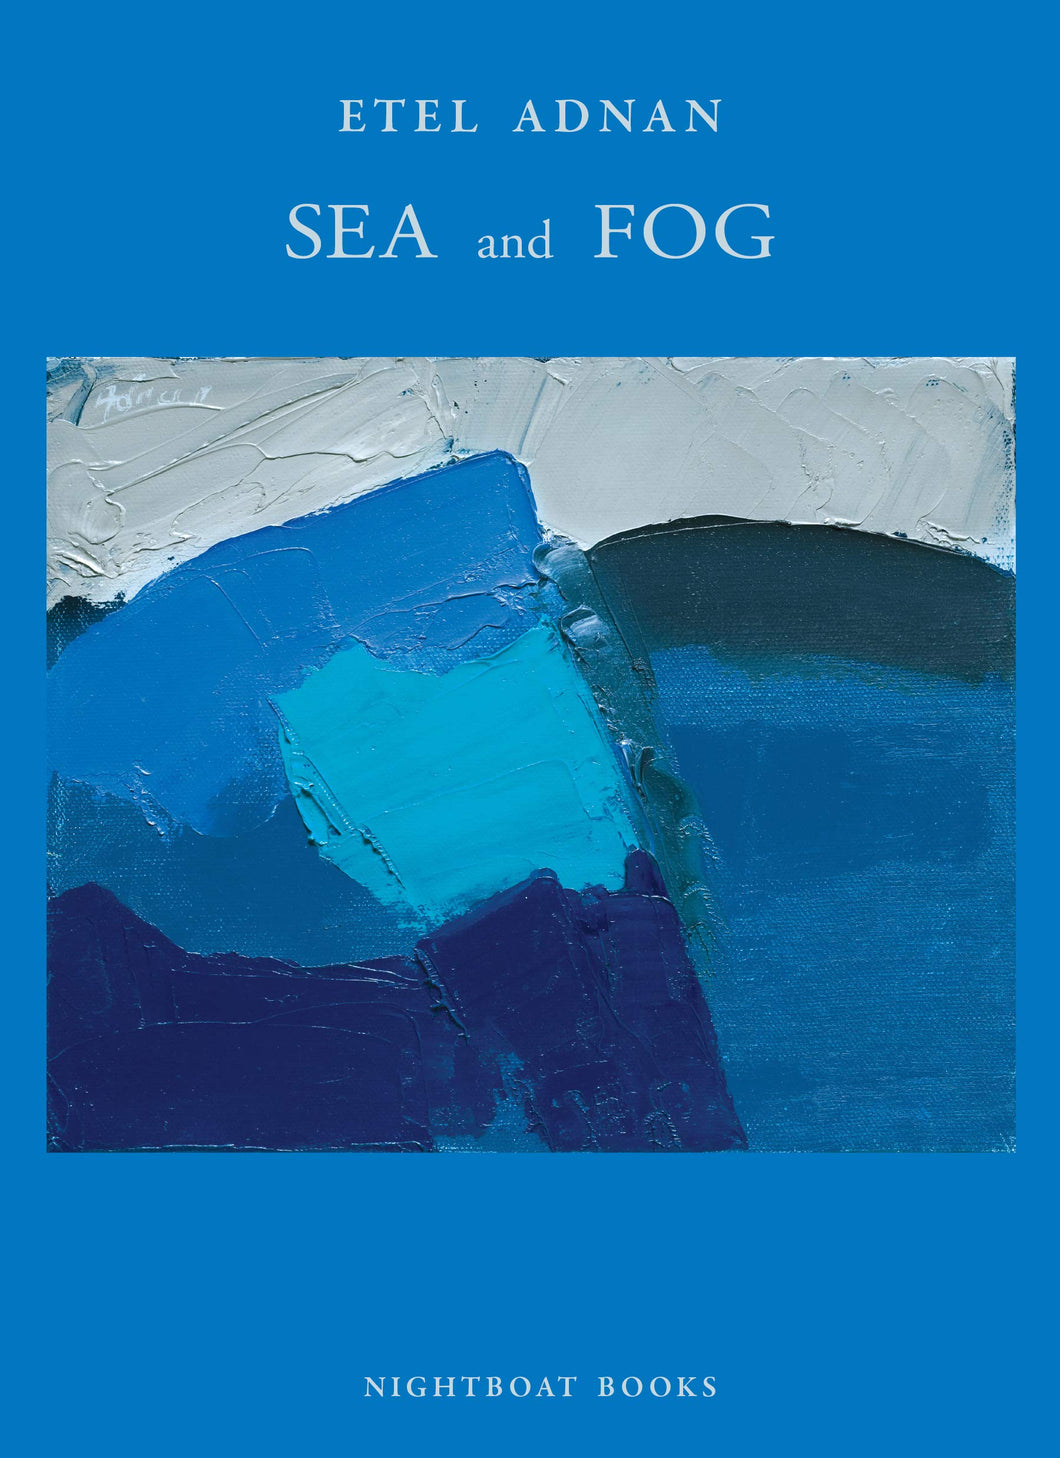 Sea and Fog by Etel Adnan